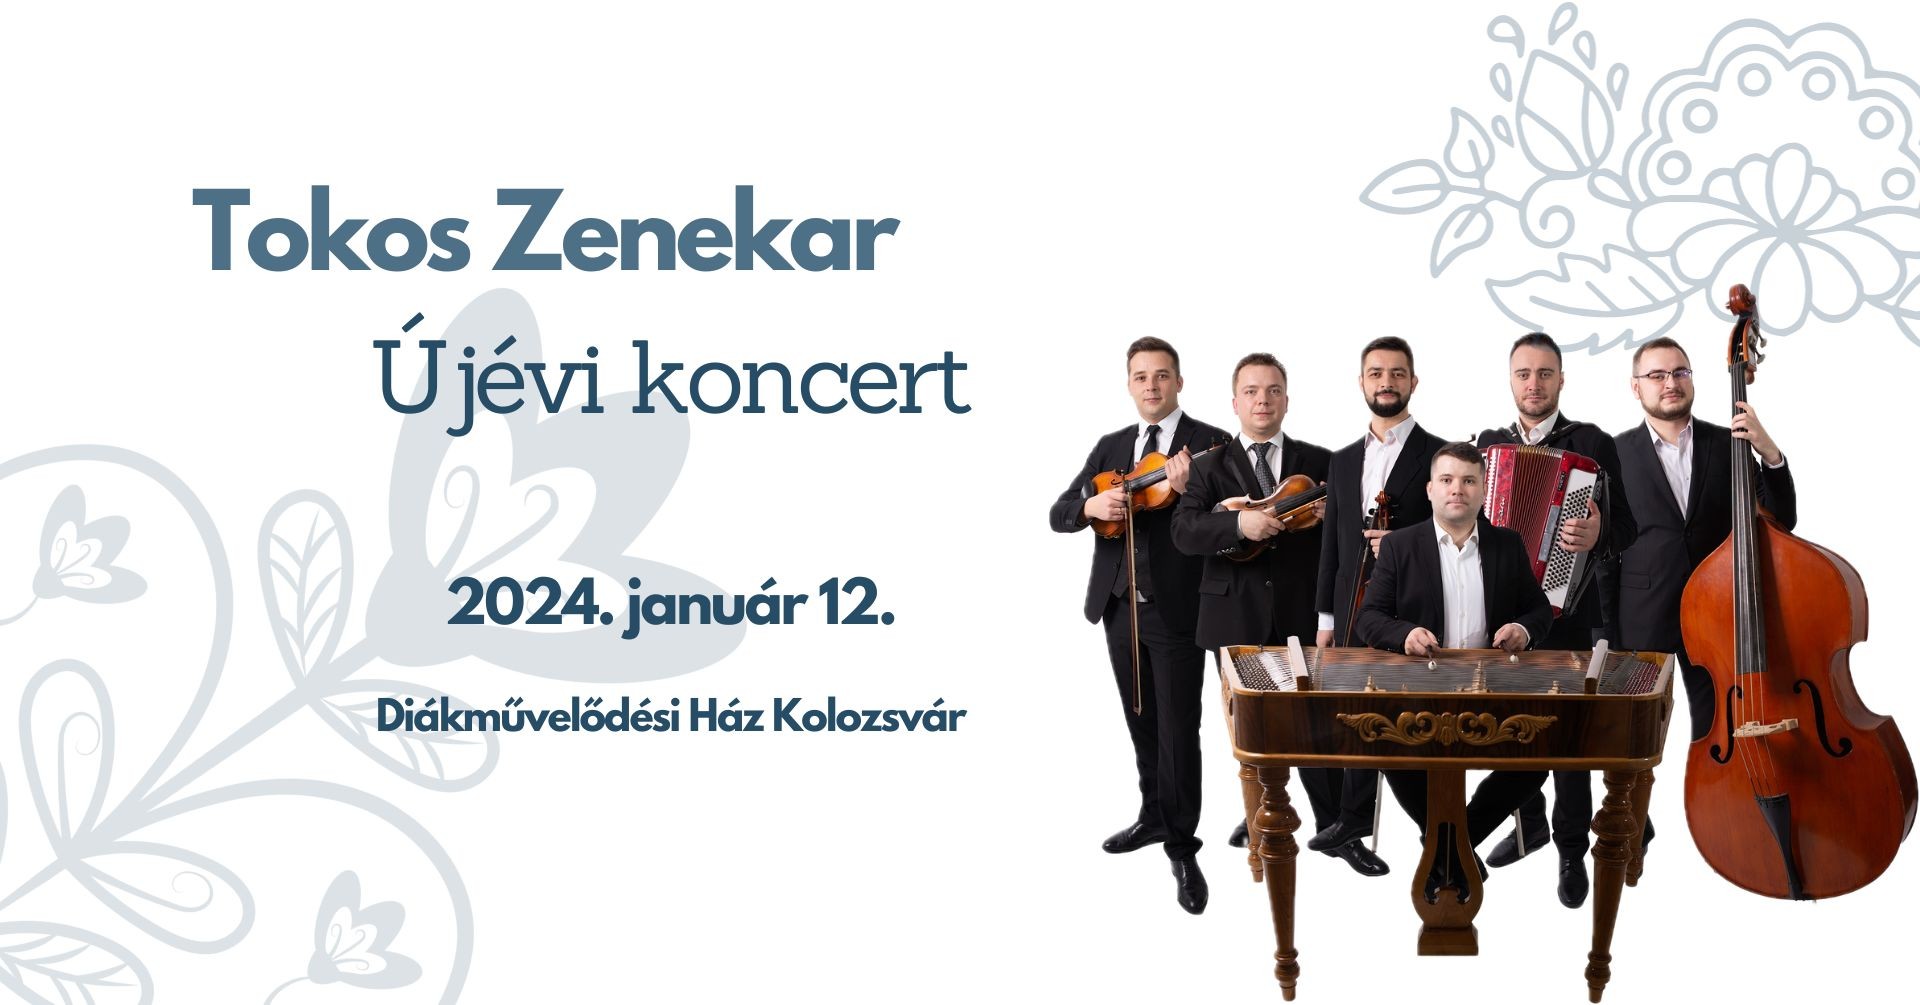 Hagyományos újévi koncertre vár a Tokos Zenekar